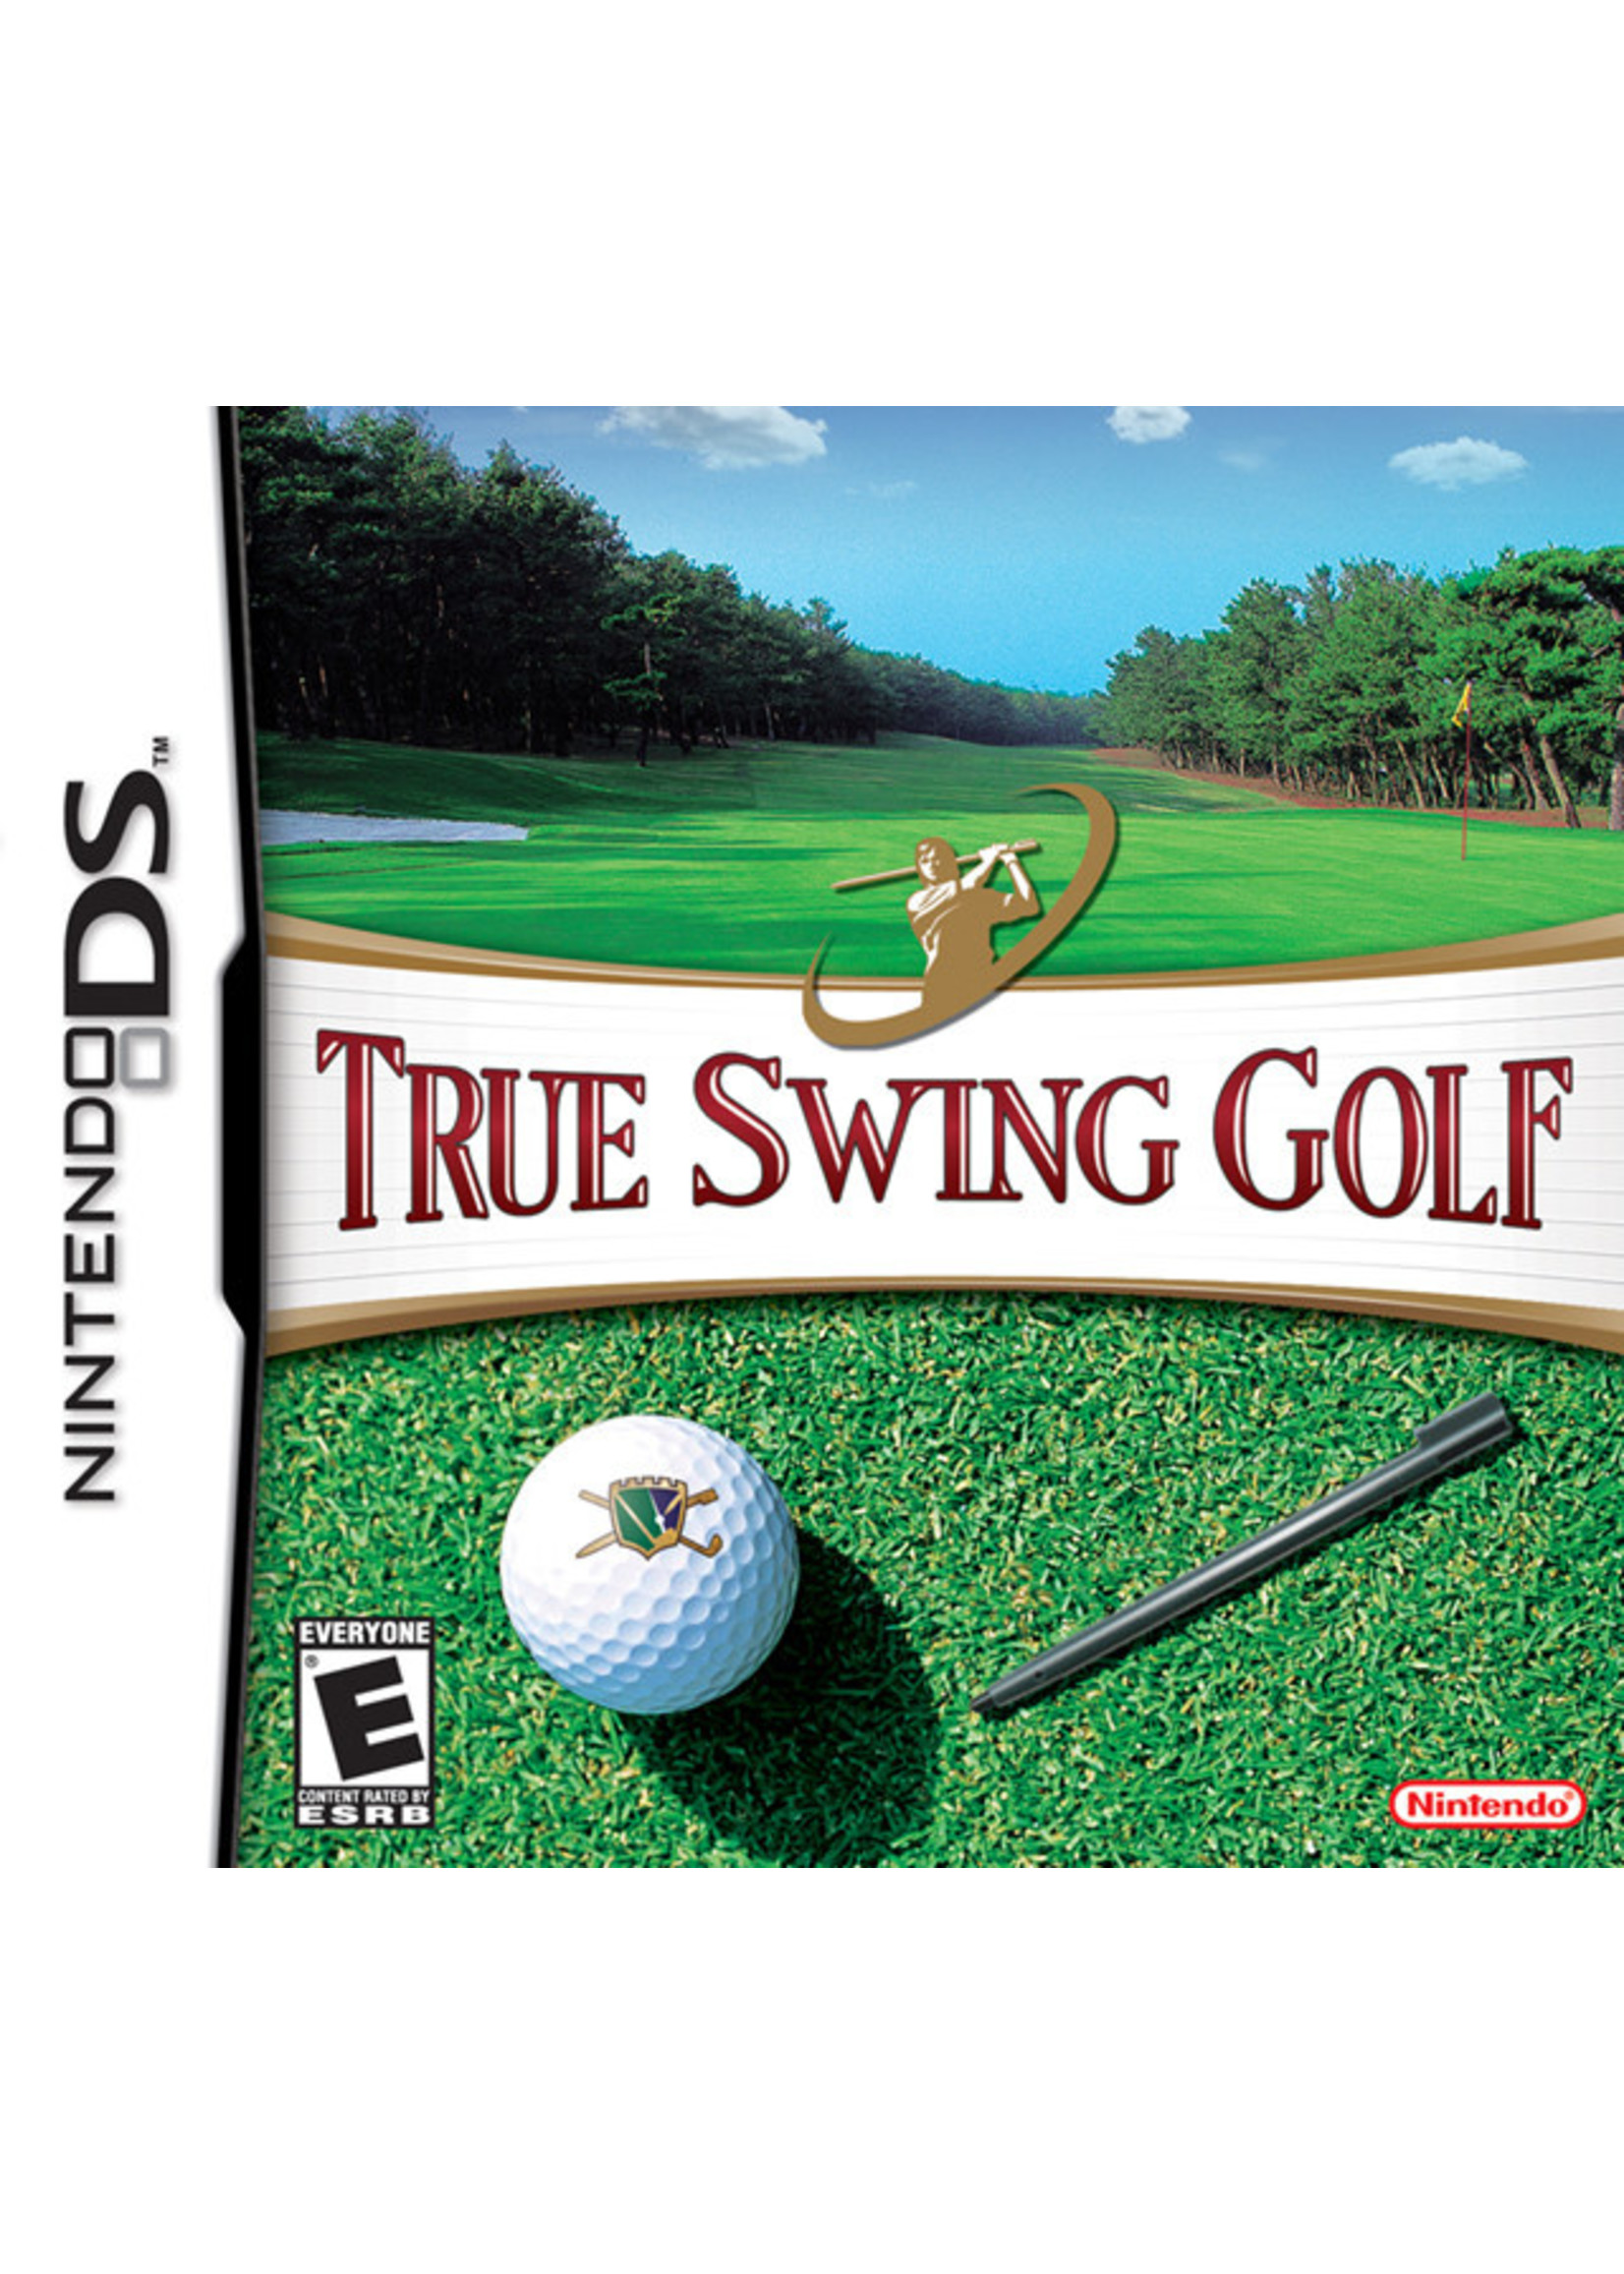 Nintendo DS True Swing Golf - Cart Only